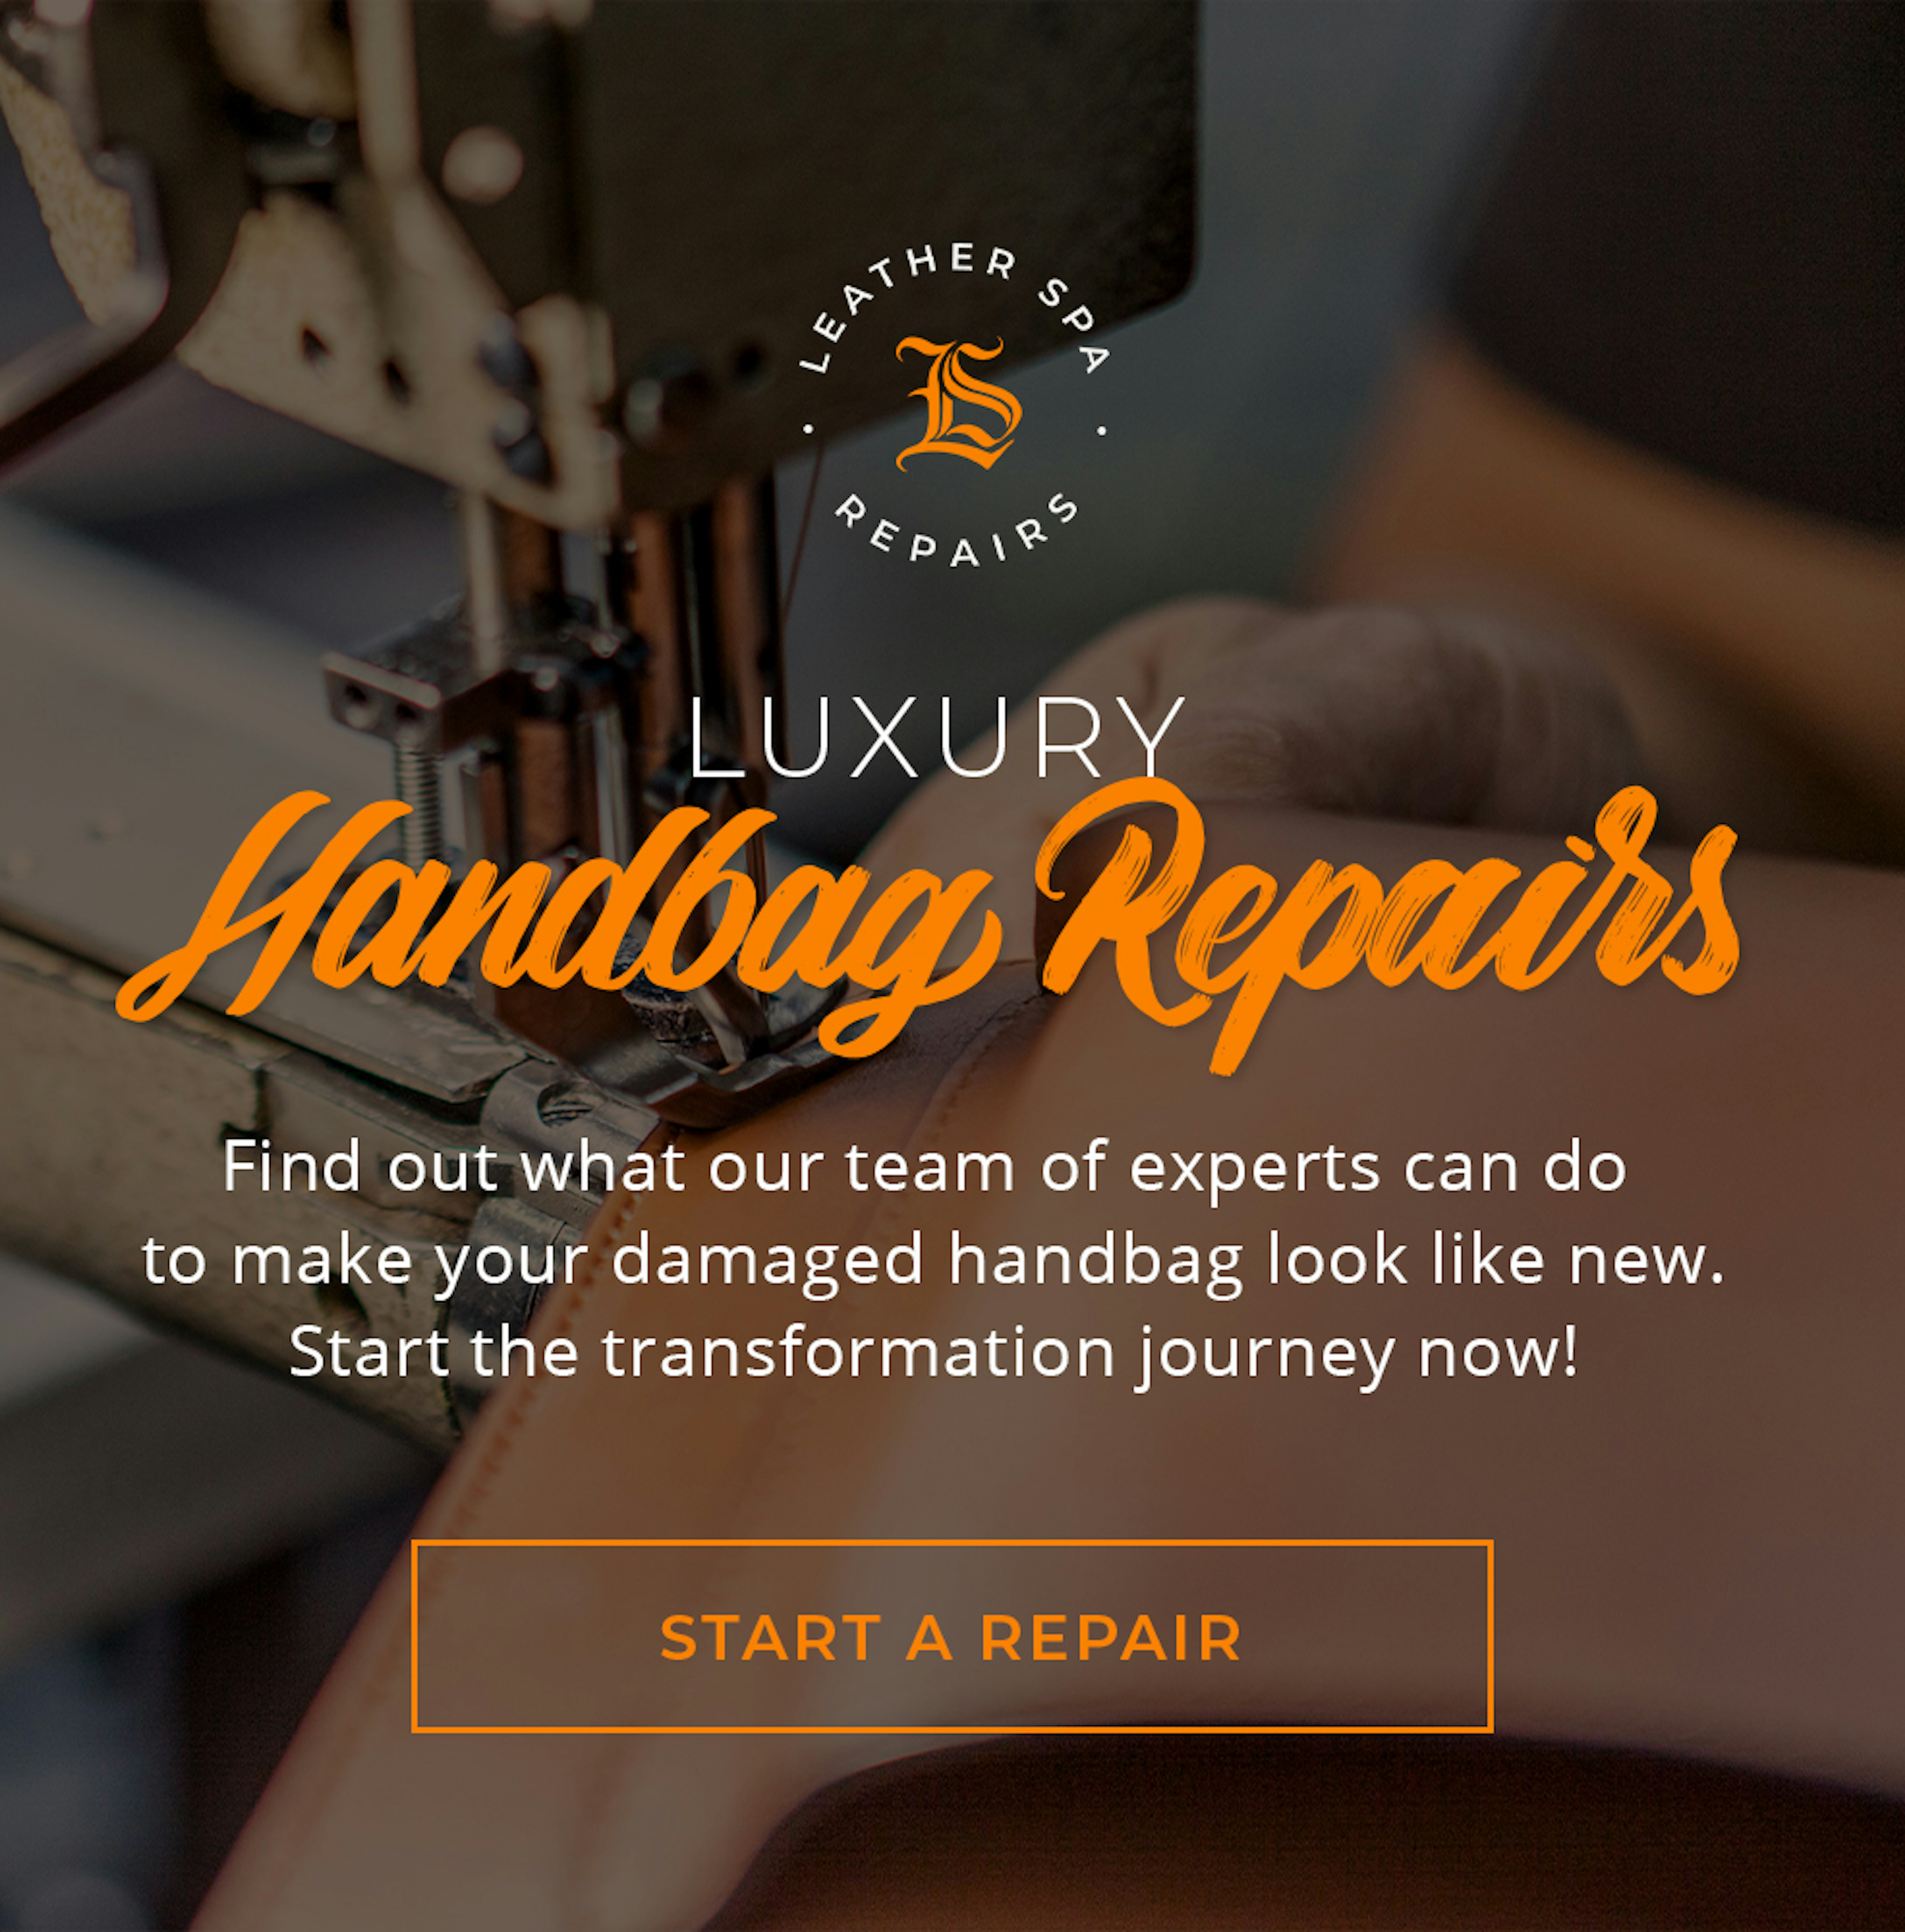 Purse Repair Toronto  Handbag Repair Experts